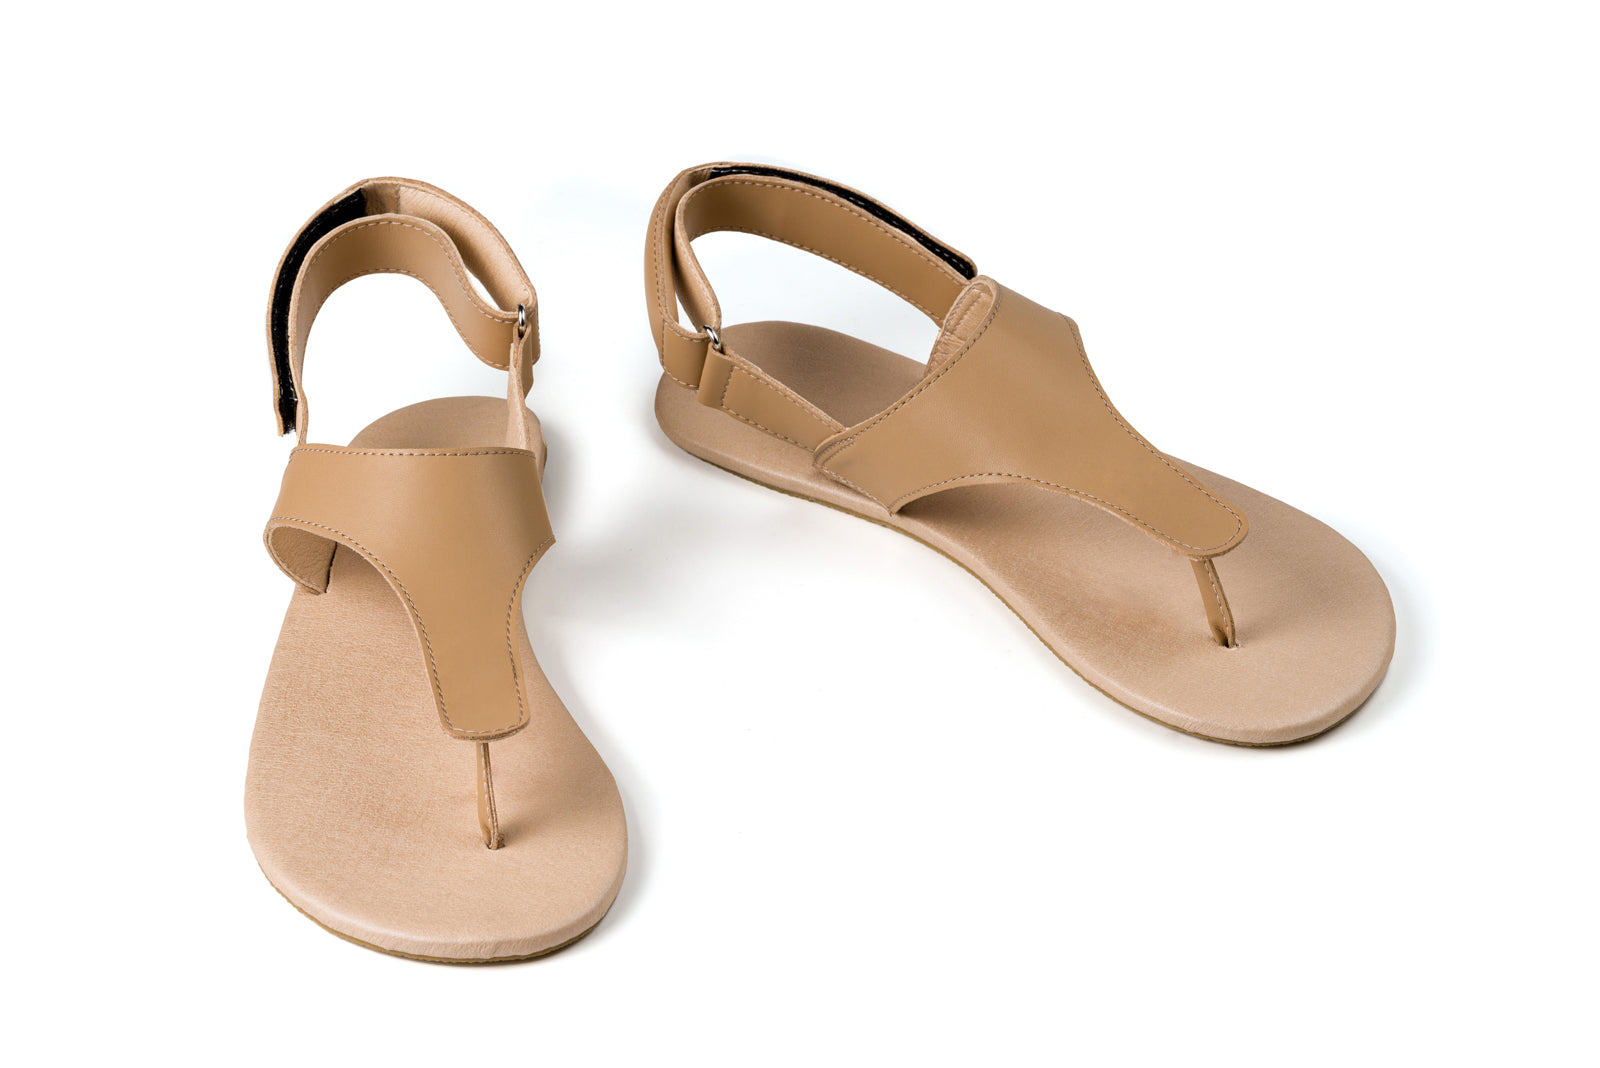 Ahinsa Simple barfods sandaler til kvinder i farven beige, par